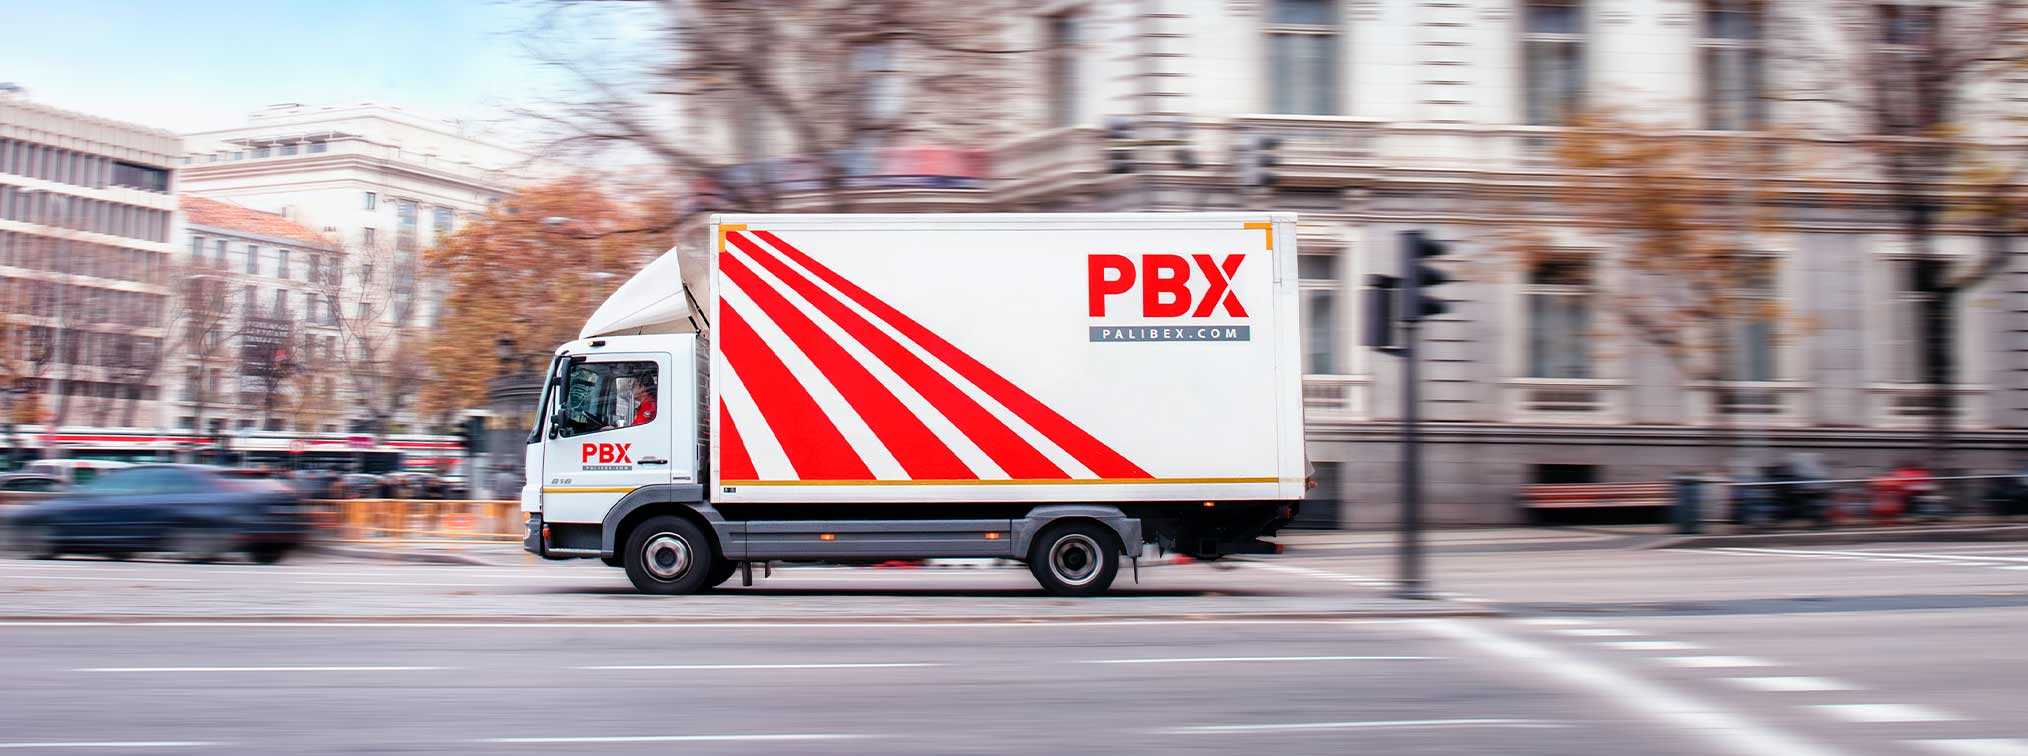 reestructuracion empresa de transporte - reestructuracion transporte - palibex - camion reparto palibex